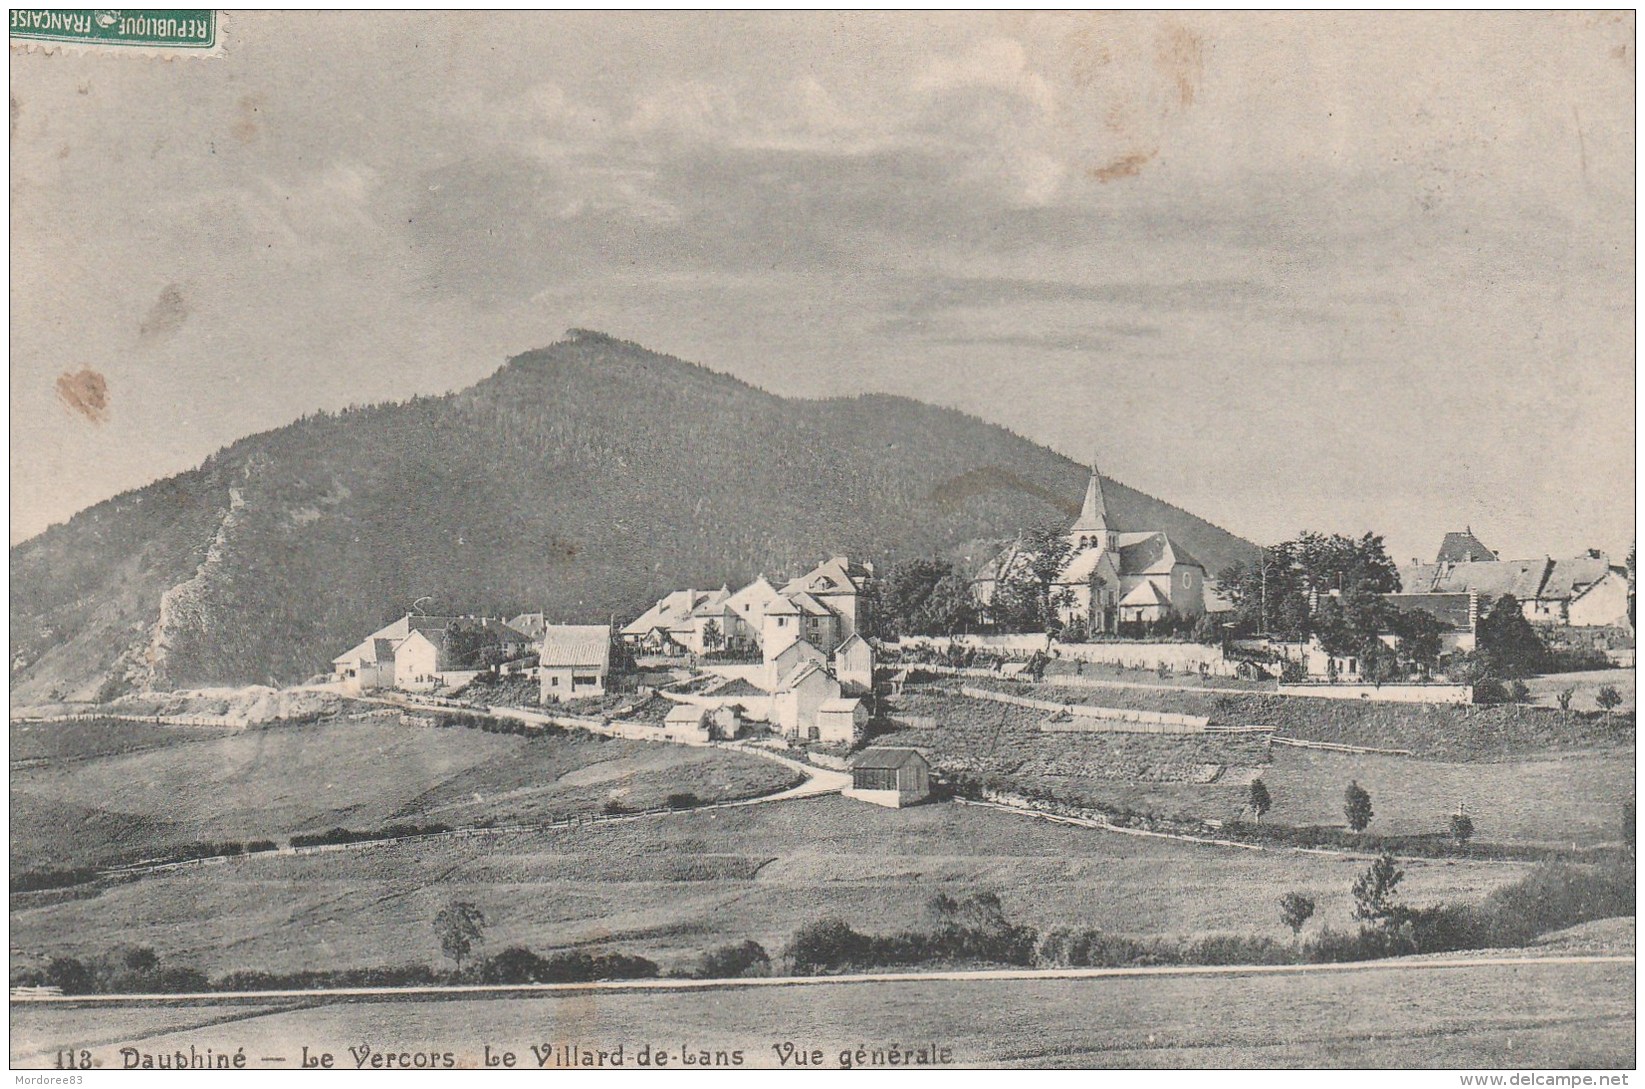 VILLARD DE LANS  - VUE GENERALE - DAUPHINE - LE VERCORS - CPA - 1909 - Villard-de-Lans